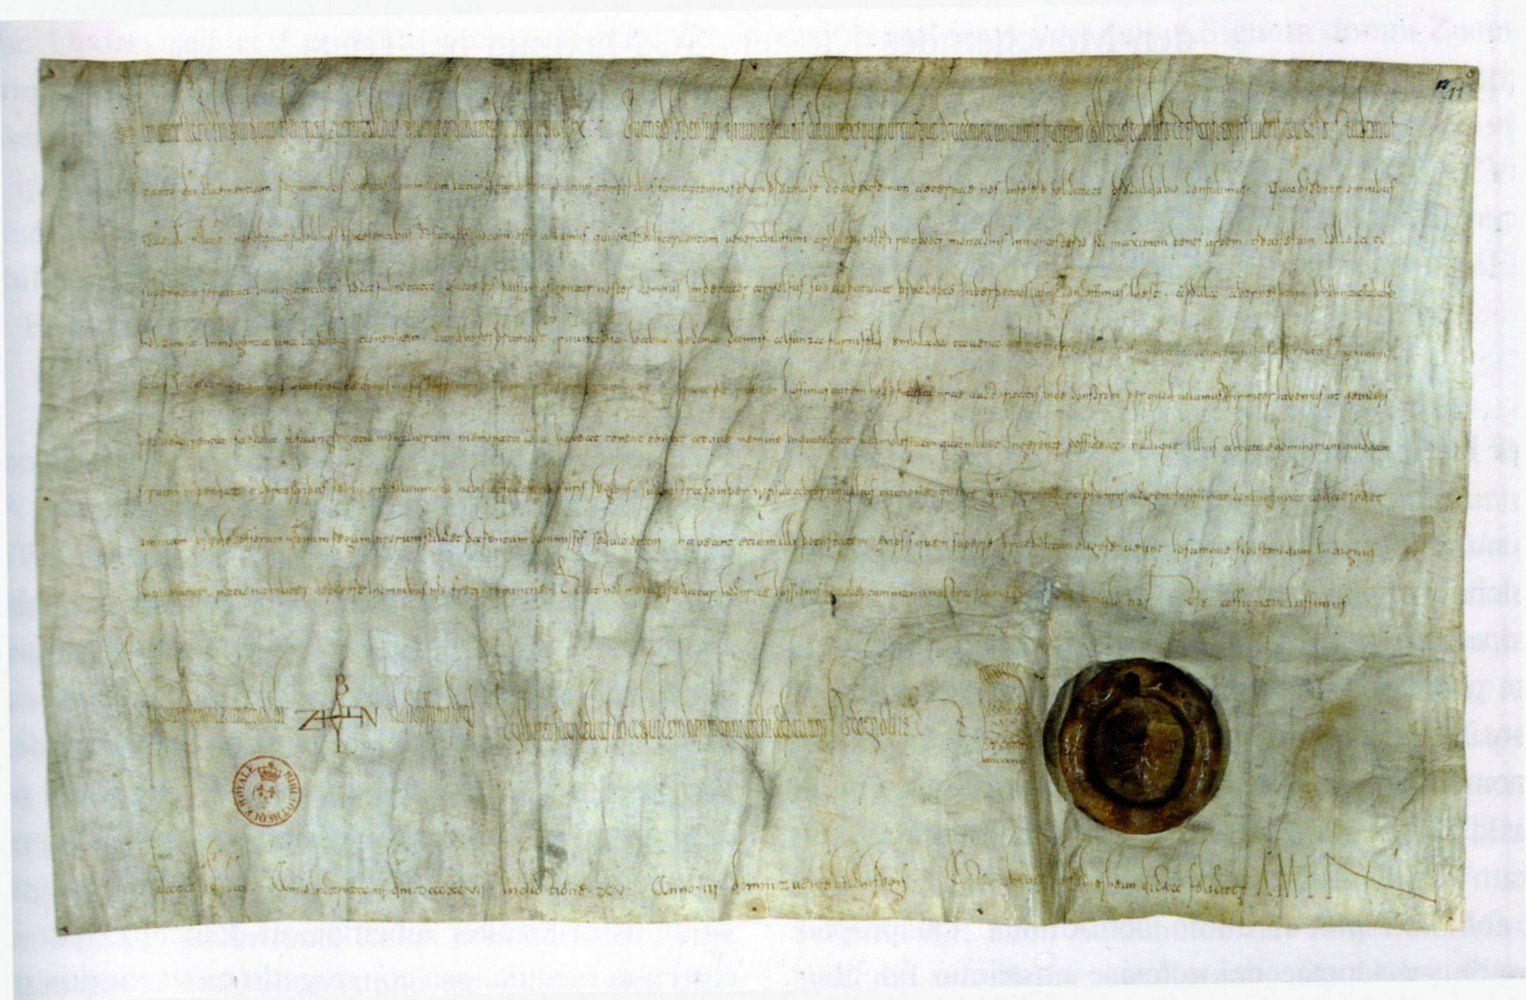 Foto der Urkunde mit der Ersterwähnung von Guntersblum 997 (Kulturverein Guntersblum CC BY-NC-SA)